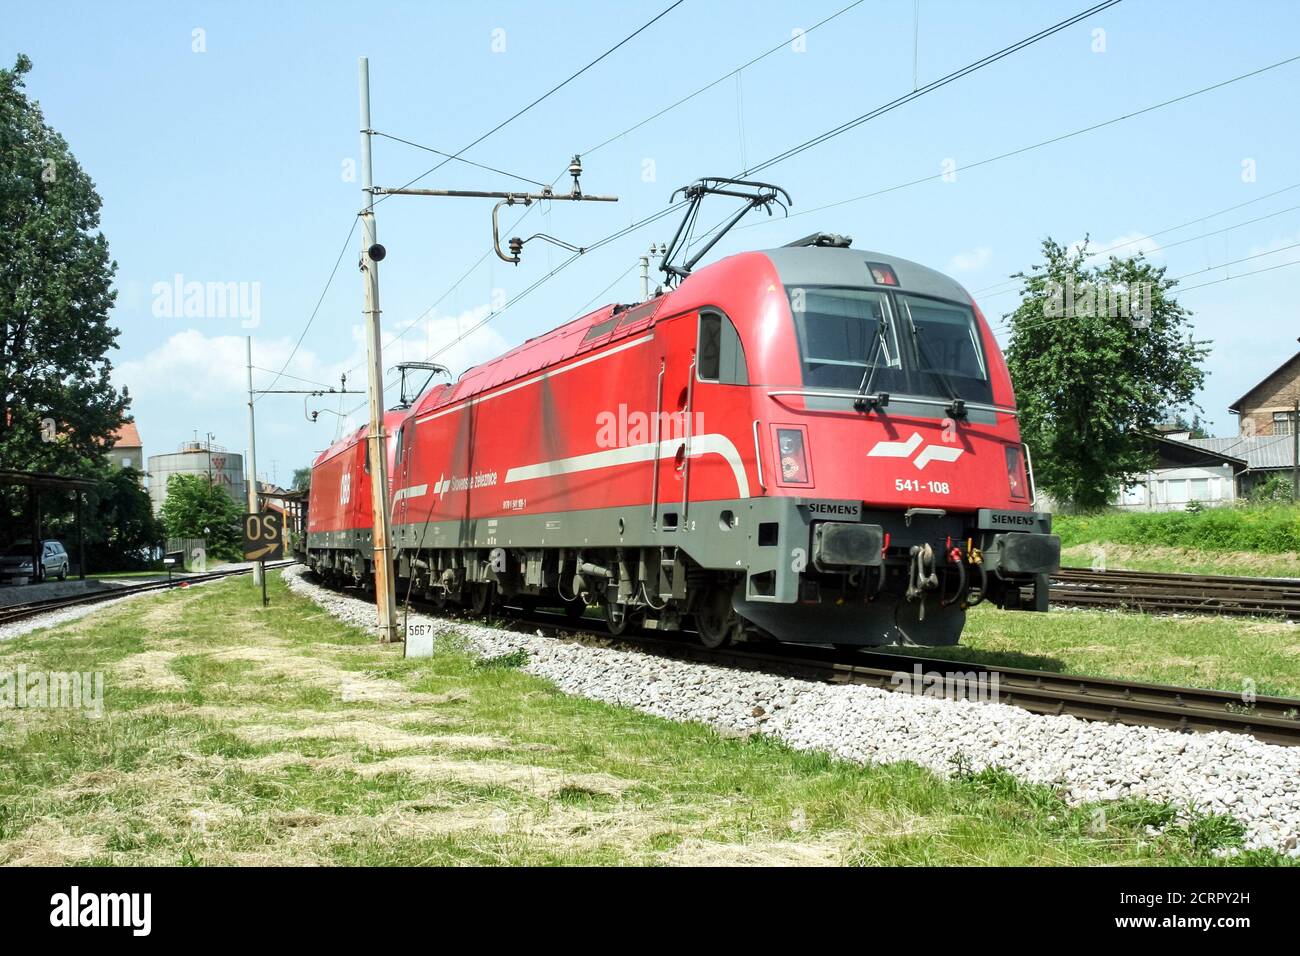 LUBIANA, SLOVENIA - 1 GIUGNO 2008: Slovena Ferrovie (Slovenske Zeleznice) locomotiva elettrica Serie 541 Taurus pronta per il traino di un cargo trenino nea Foto Stock